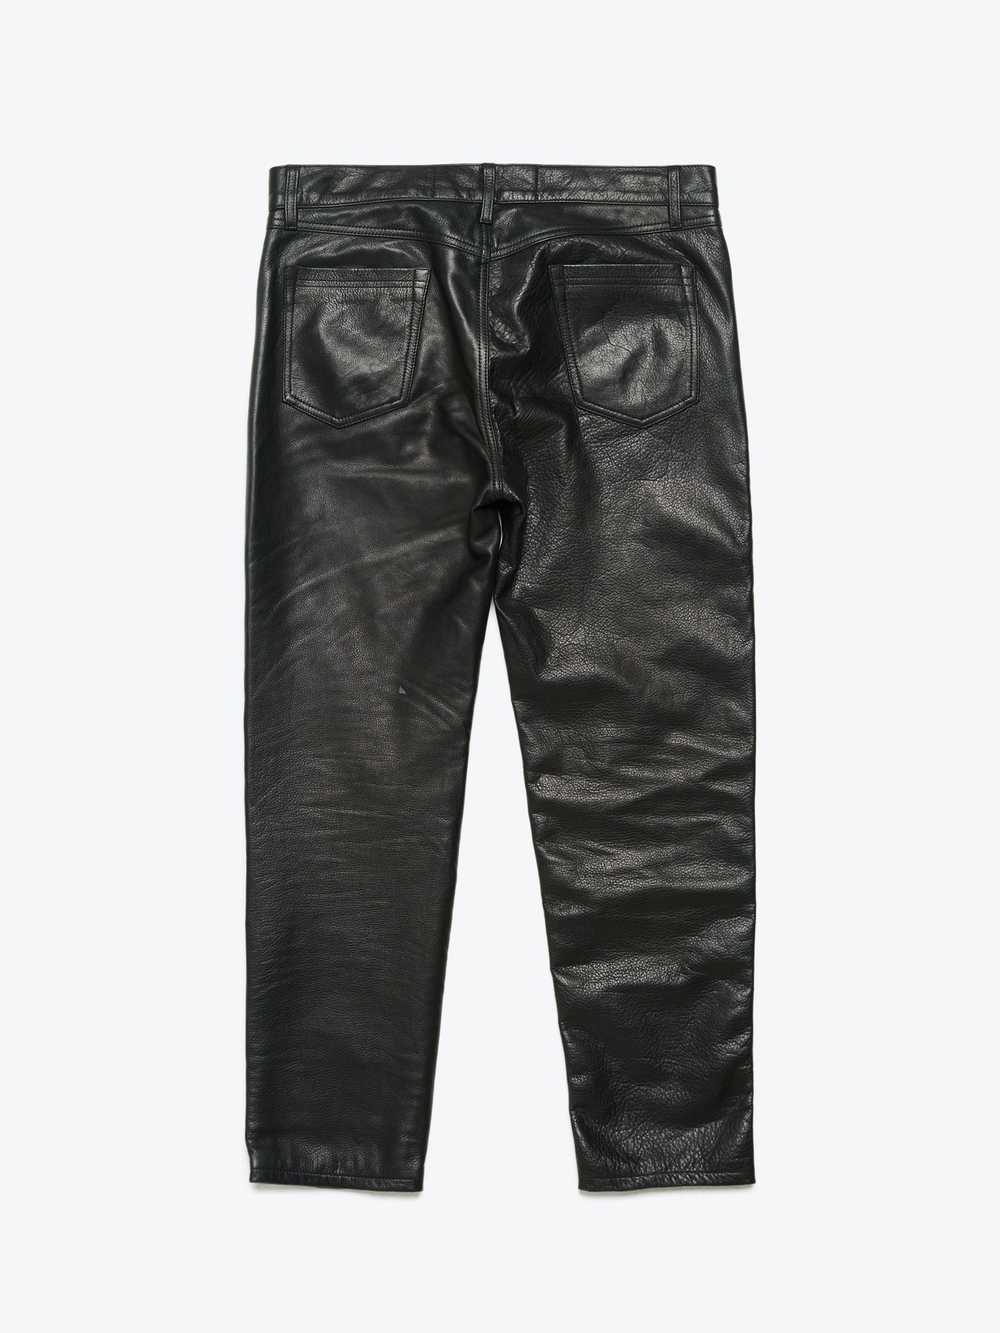 Enfants Riches Deprimes Black Leather Pants - image 2